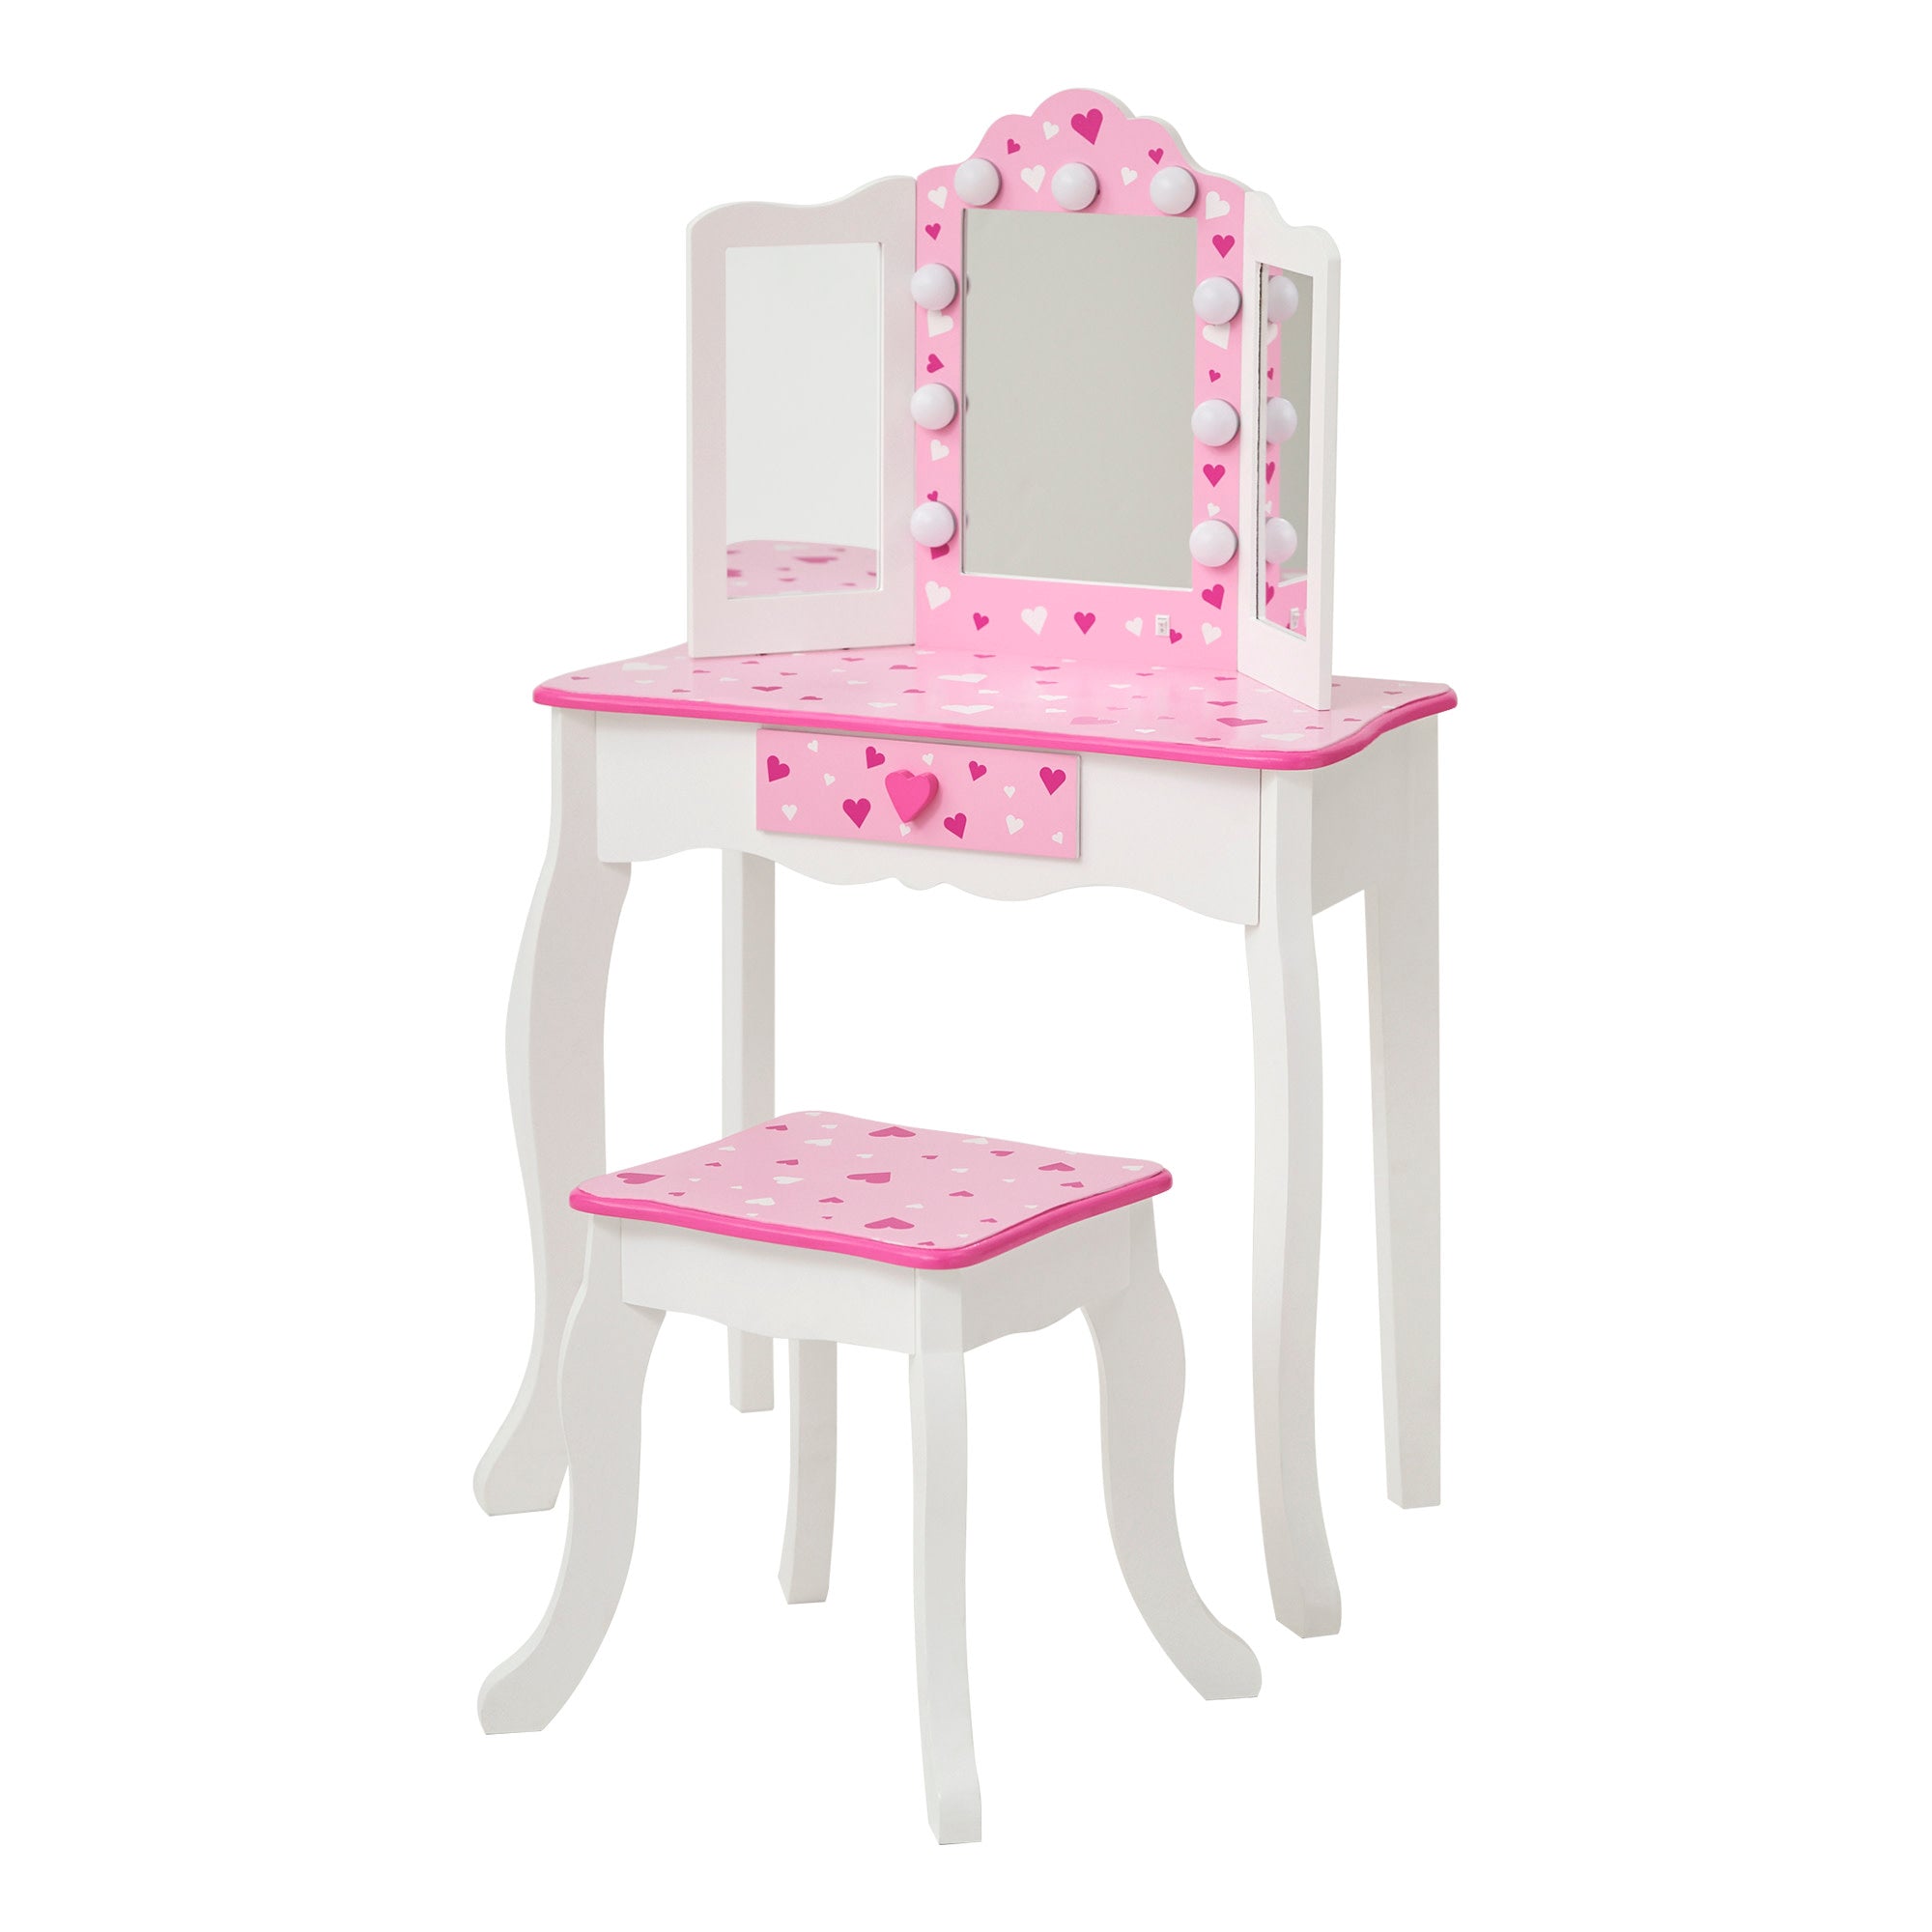 Tables Makeup & Kids Vanity Vanities Sets: Teamson - Princess